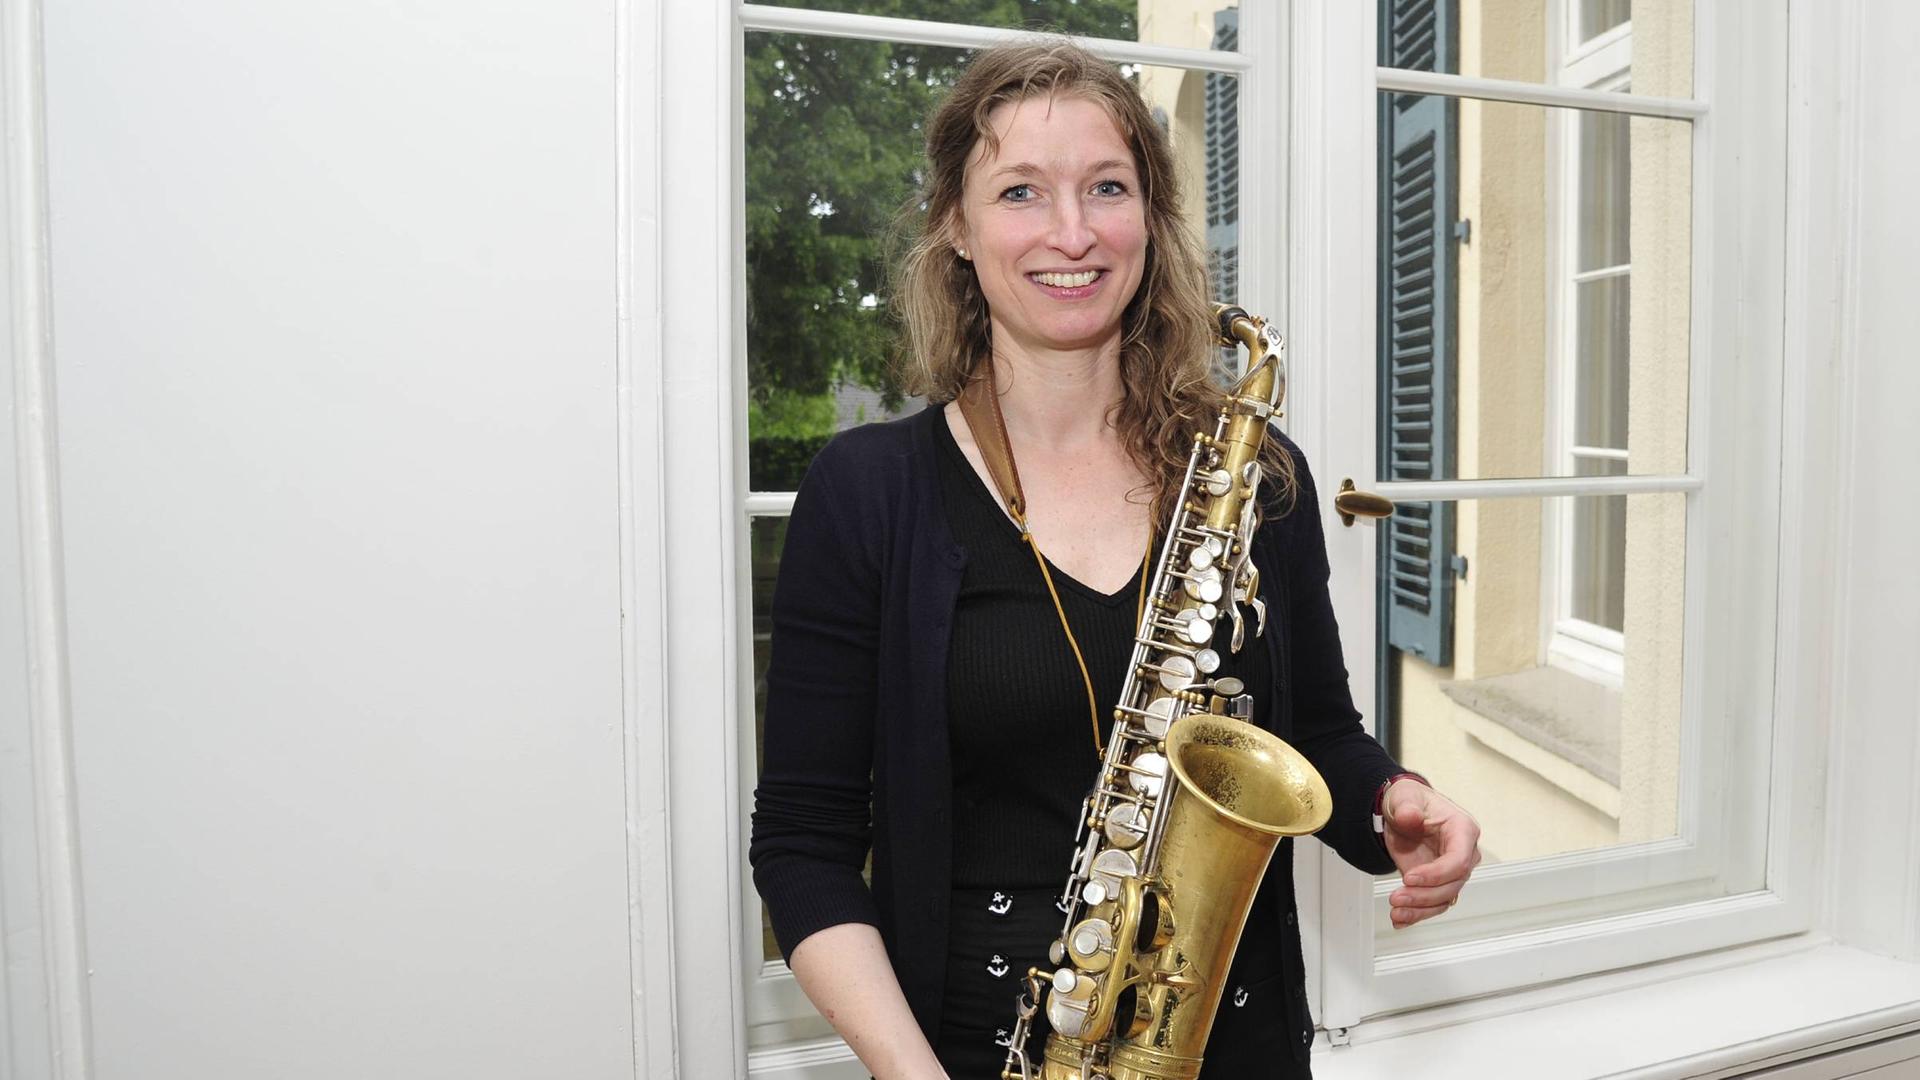 Eine Frau, Nicole Johänntgen, steht vor einem Fenster einer Villa. Sie trägt schwarze Kleidung und hat ein Saxofon in der Hand. 